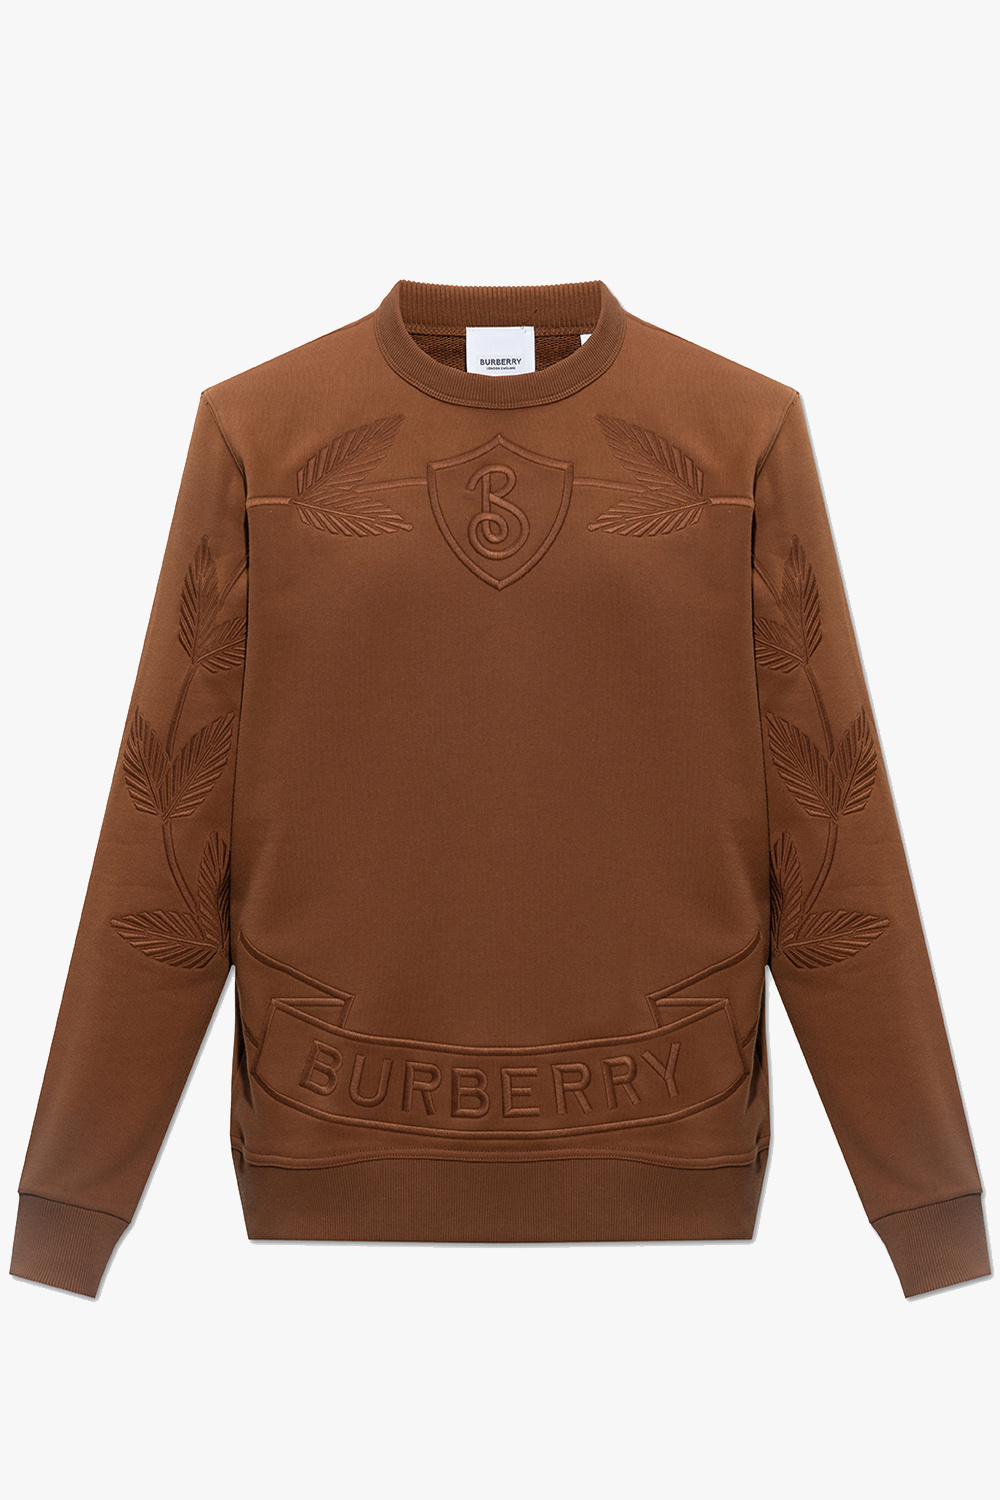 Burberry ‘Banstead’ sweatshirt